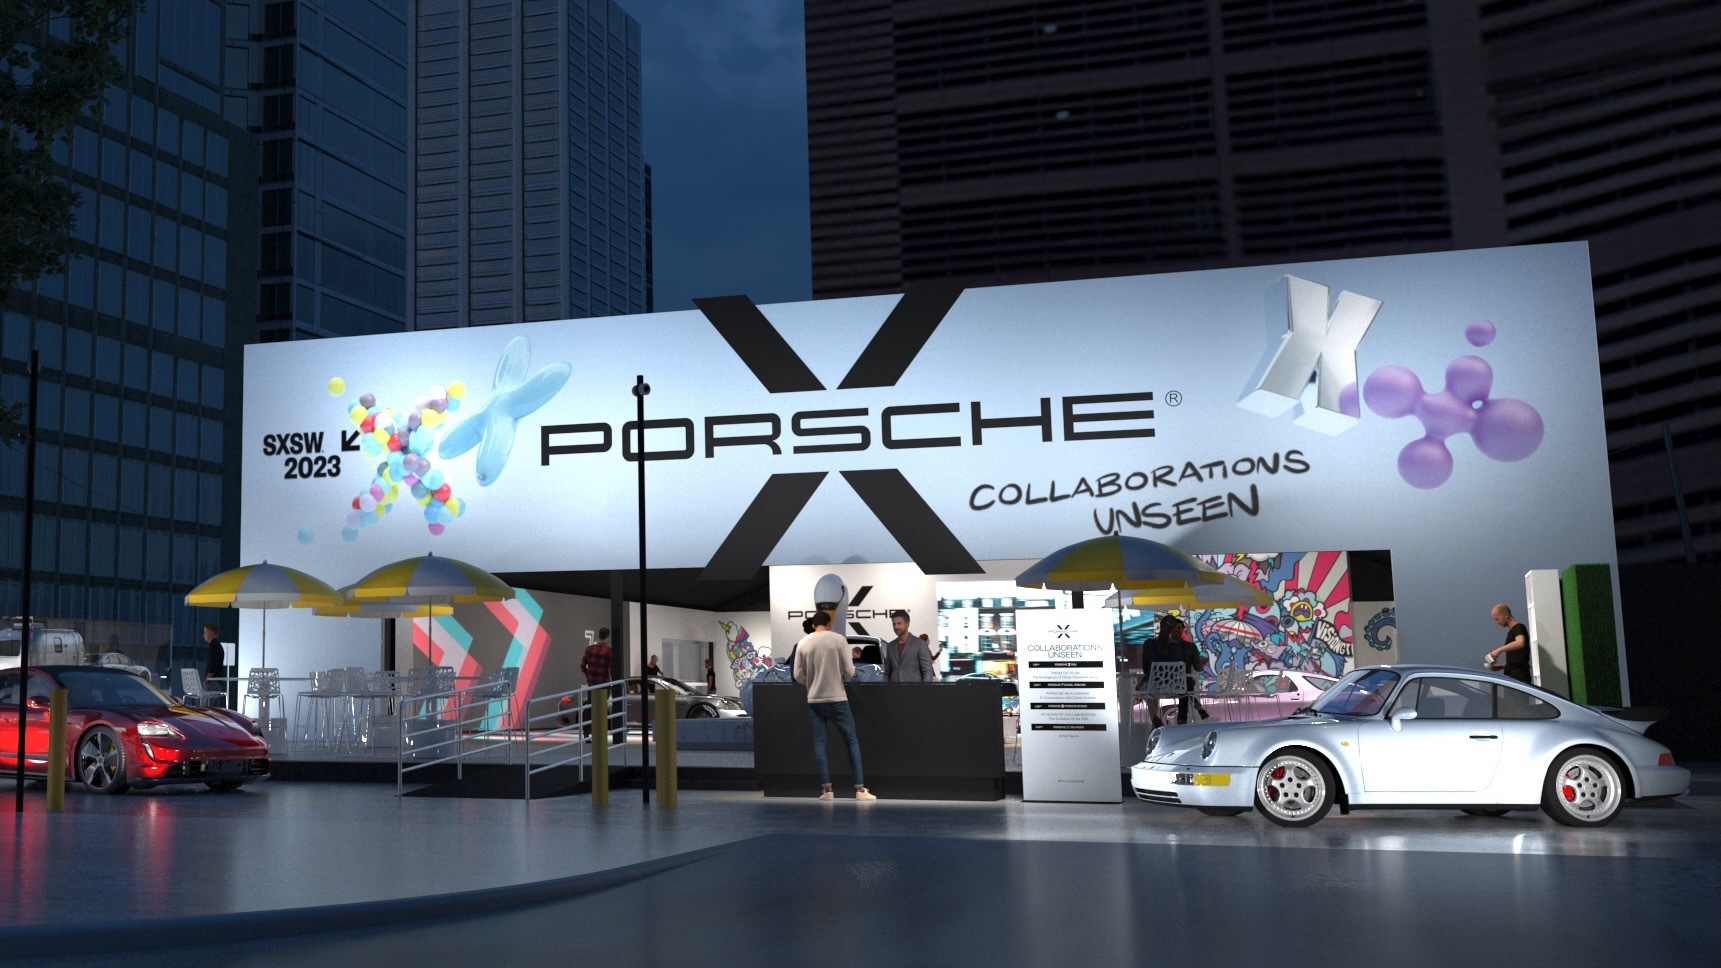 Porsche exhibit at SXSW 2023 in Austin, Texas